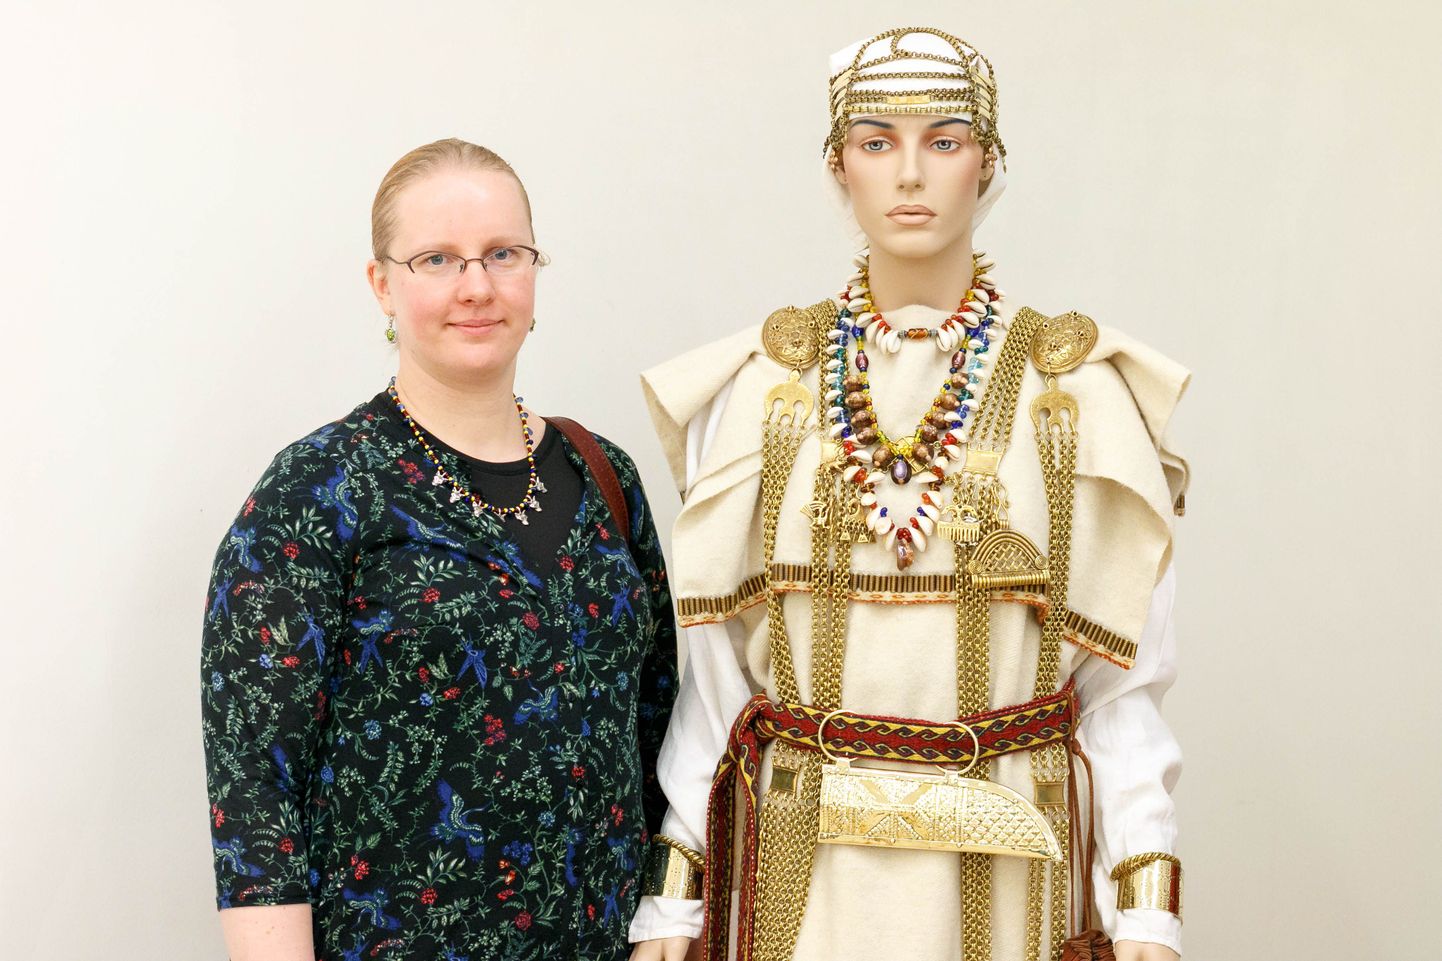 Egge Edussaar-Haraku näitus Valga muuseumis pakub külastajatele palju avastamis- ja vaatamisrõõmu. Heledate rõivastega naismodelli riideid ehib 18 meetrit ketti, mille valmistamiseks kulus kunstnikul pea pool aastat.